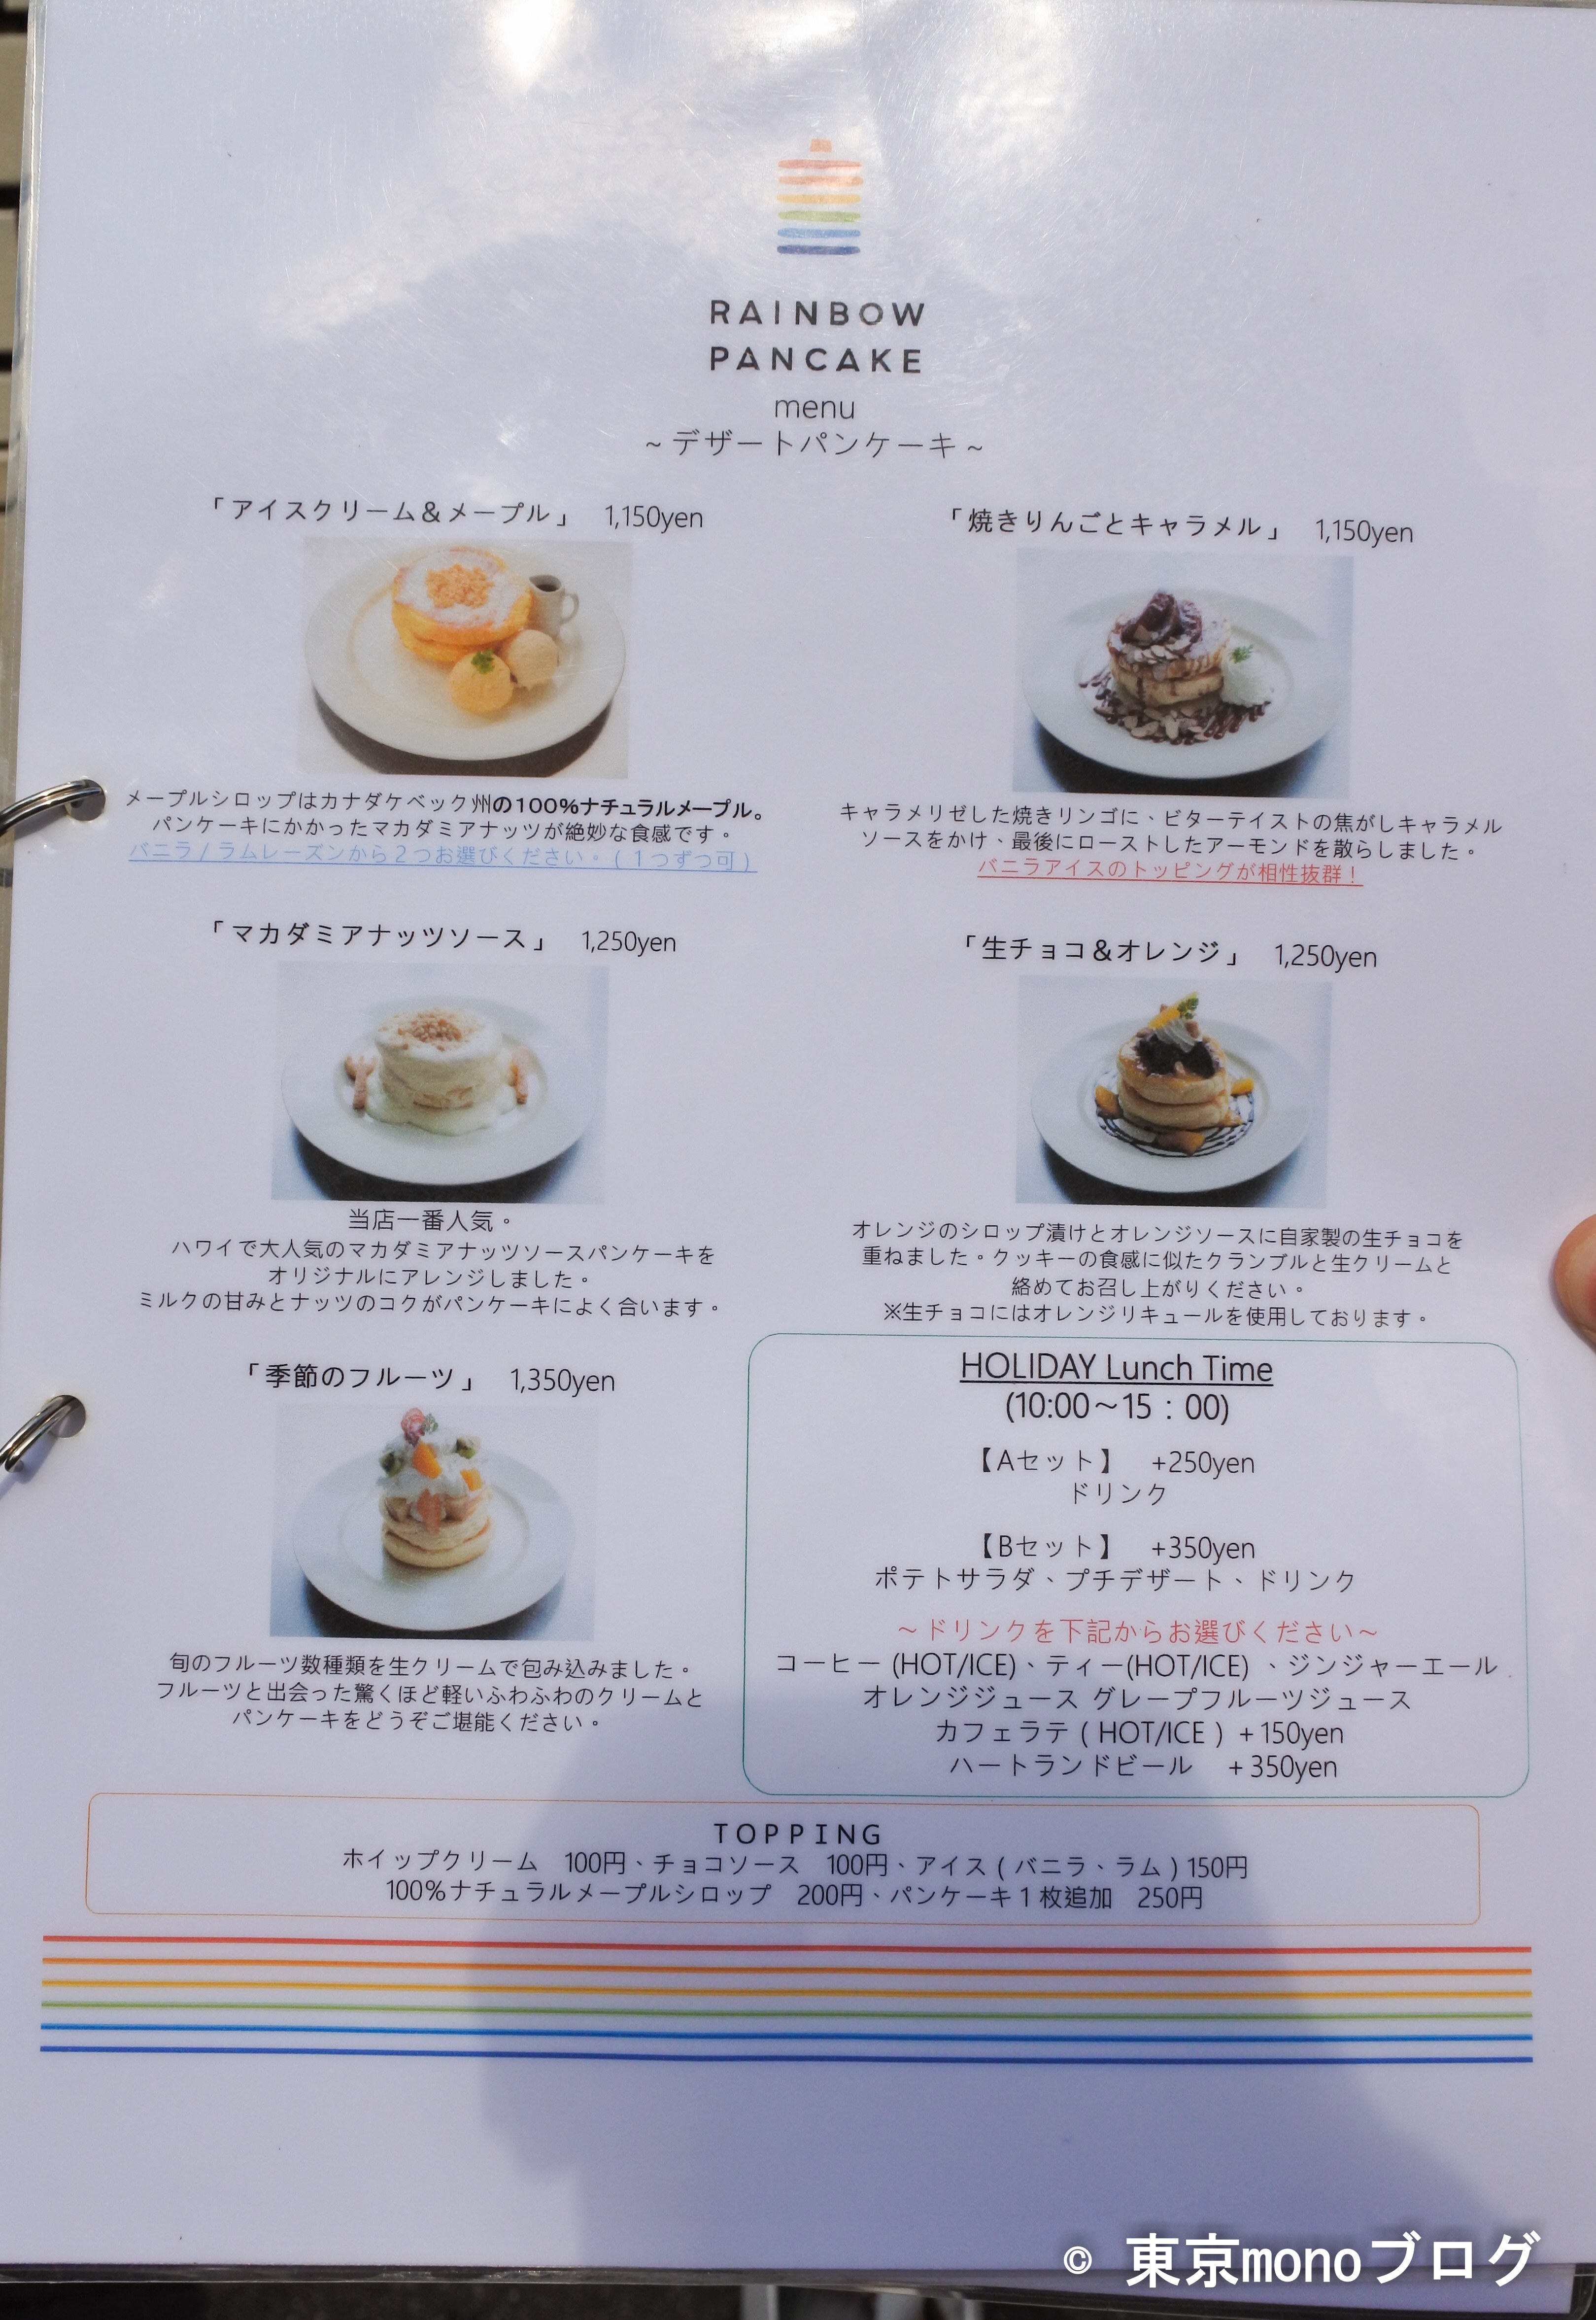 原宿レインボーパンケーキ美味しすぎ メニュー アクセス 待ち時間まとめました 東京monoブログ